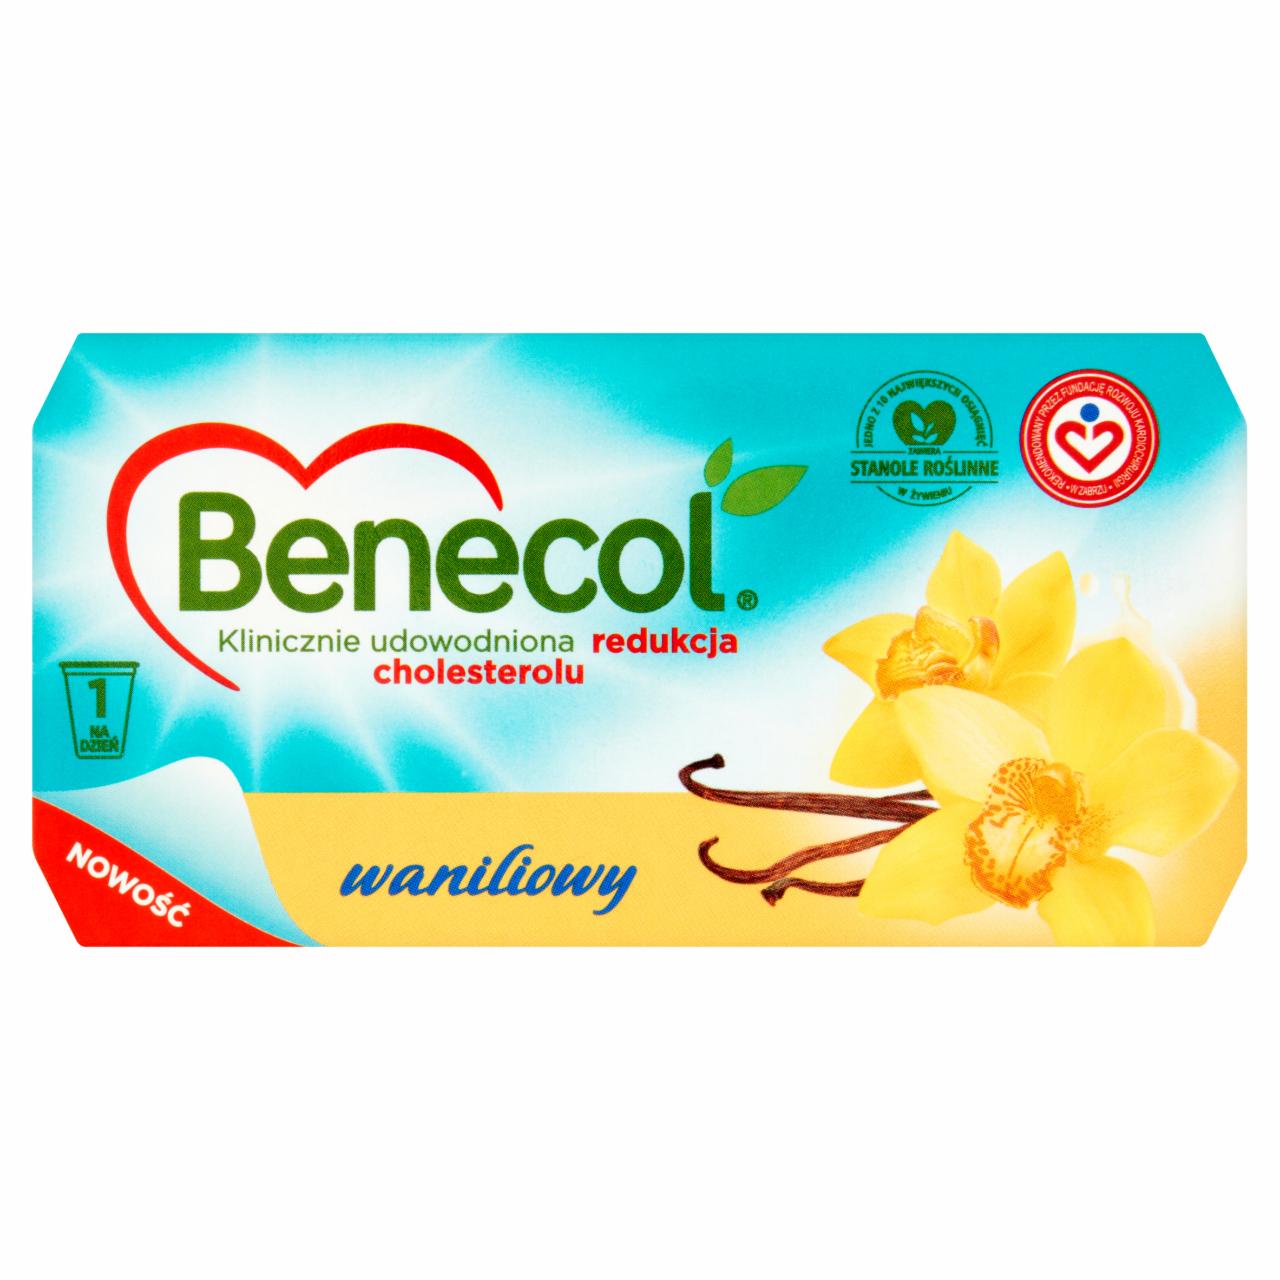 Zdjęcia - Benecol waniliowy Produkt mleczny waniliowy z dodatkiem stanoli roślinnych 250 g (2 sztuki)